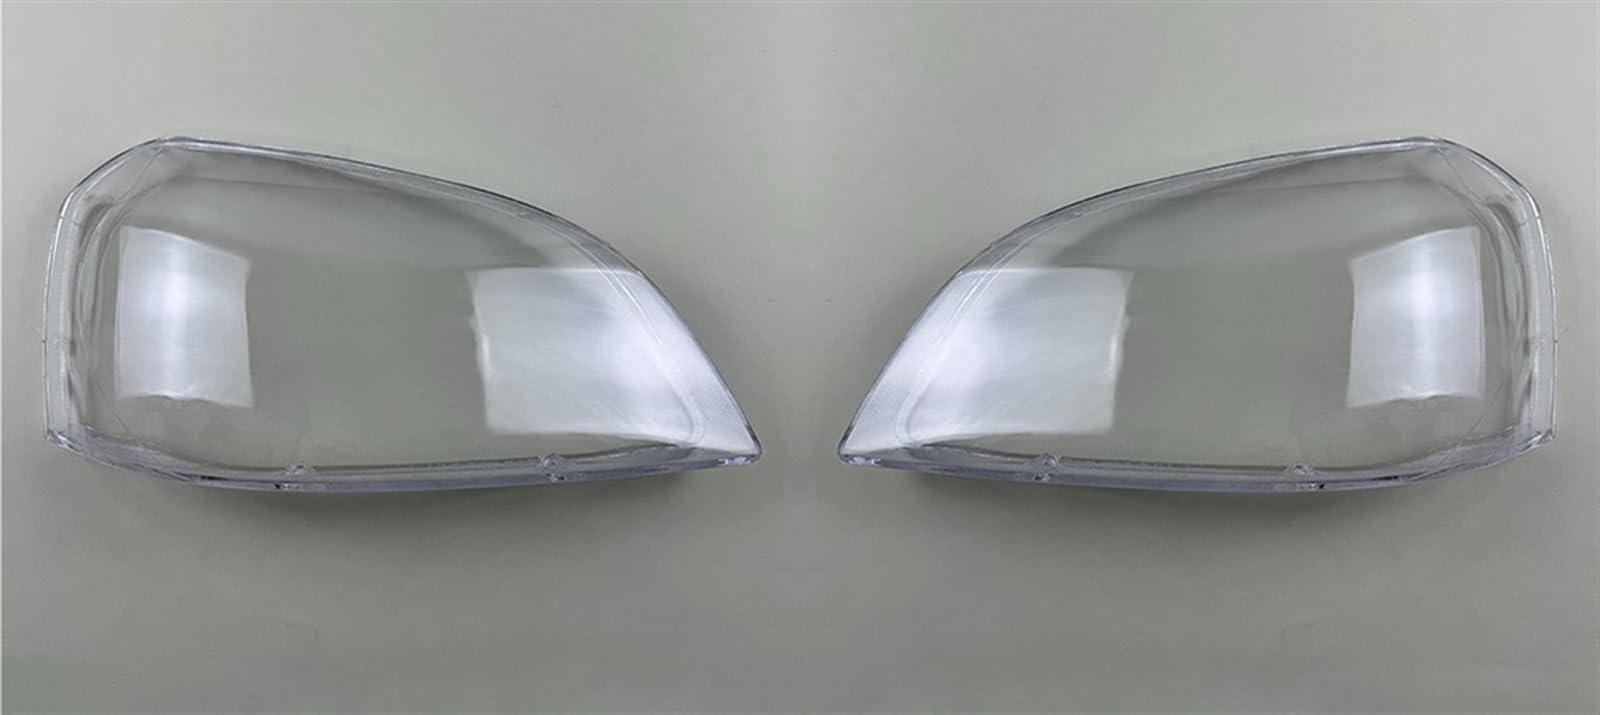 LFDTO Passend for Buick Excelle 2002-2007 Autoscheinwerfer-Abdecklinse, Glasschale, Frontscheinwerferkappen, transparenter Lampenschirm, Auto-Lichtlampengehäuse(2PCS left and right) von LFDTO